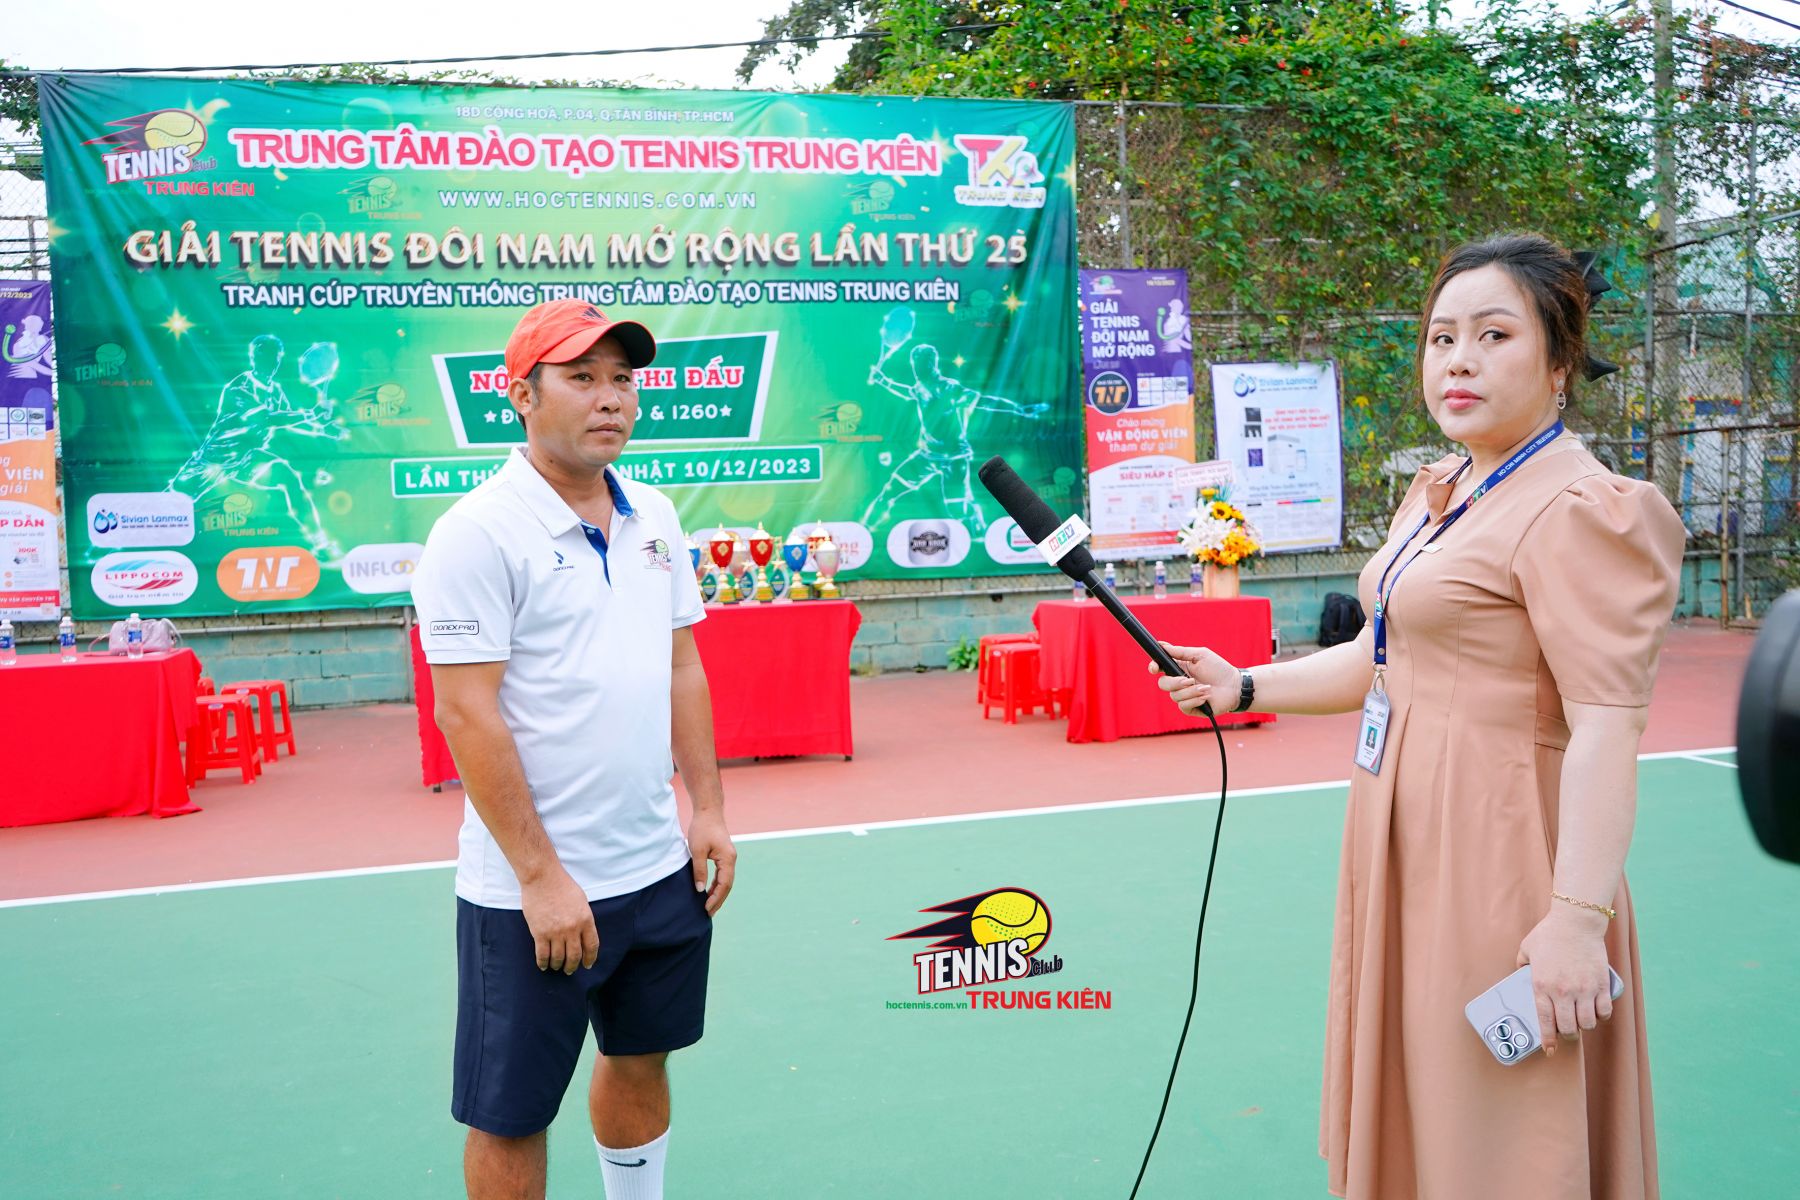 Giải Tennis Tranh Cúp Truyền Thống Trung Tâm Đào Tạo Tennis Trung Kiên Lần Thứ 25 - Nội Dung 1260. 10-12-2023